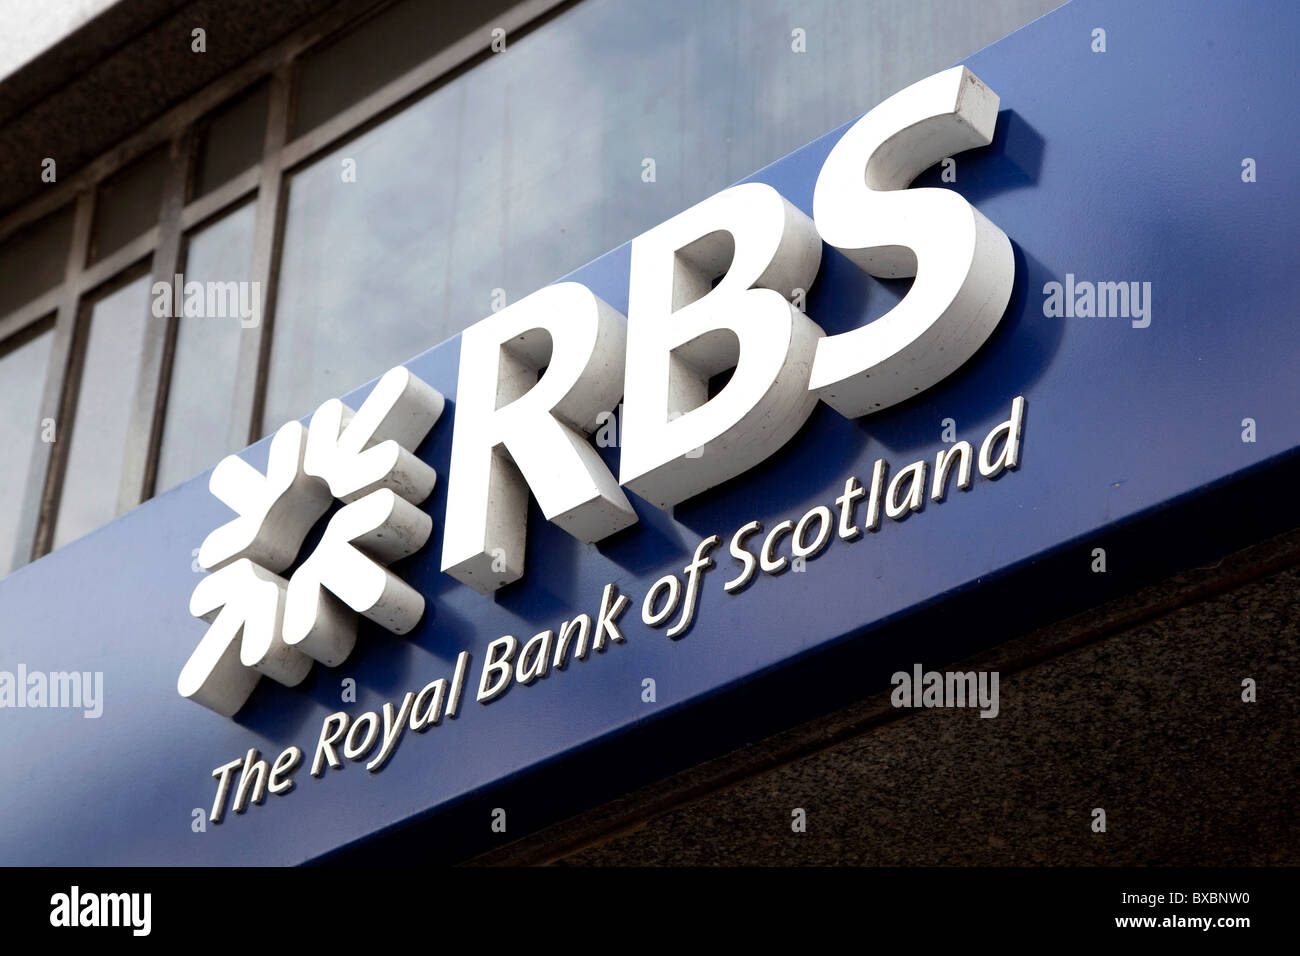 Logo de la RBS, Royal Bank of Scotland à Londres, Angleterre, Royaume-Uni, Europe Banque D'Images